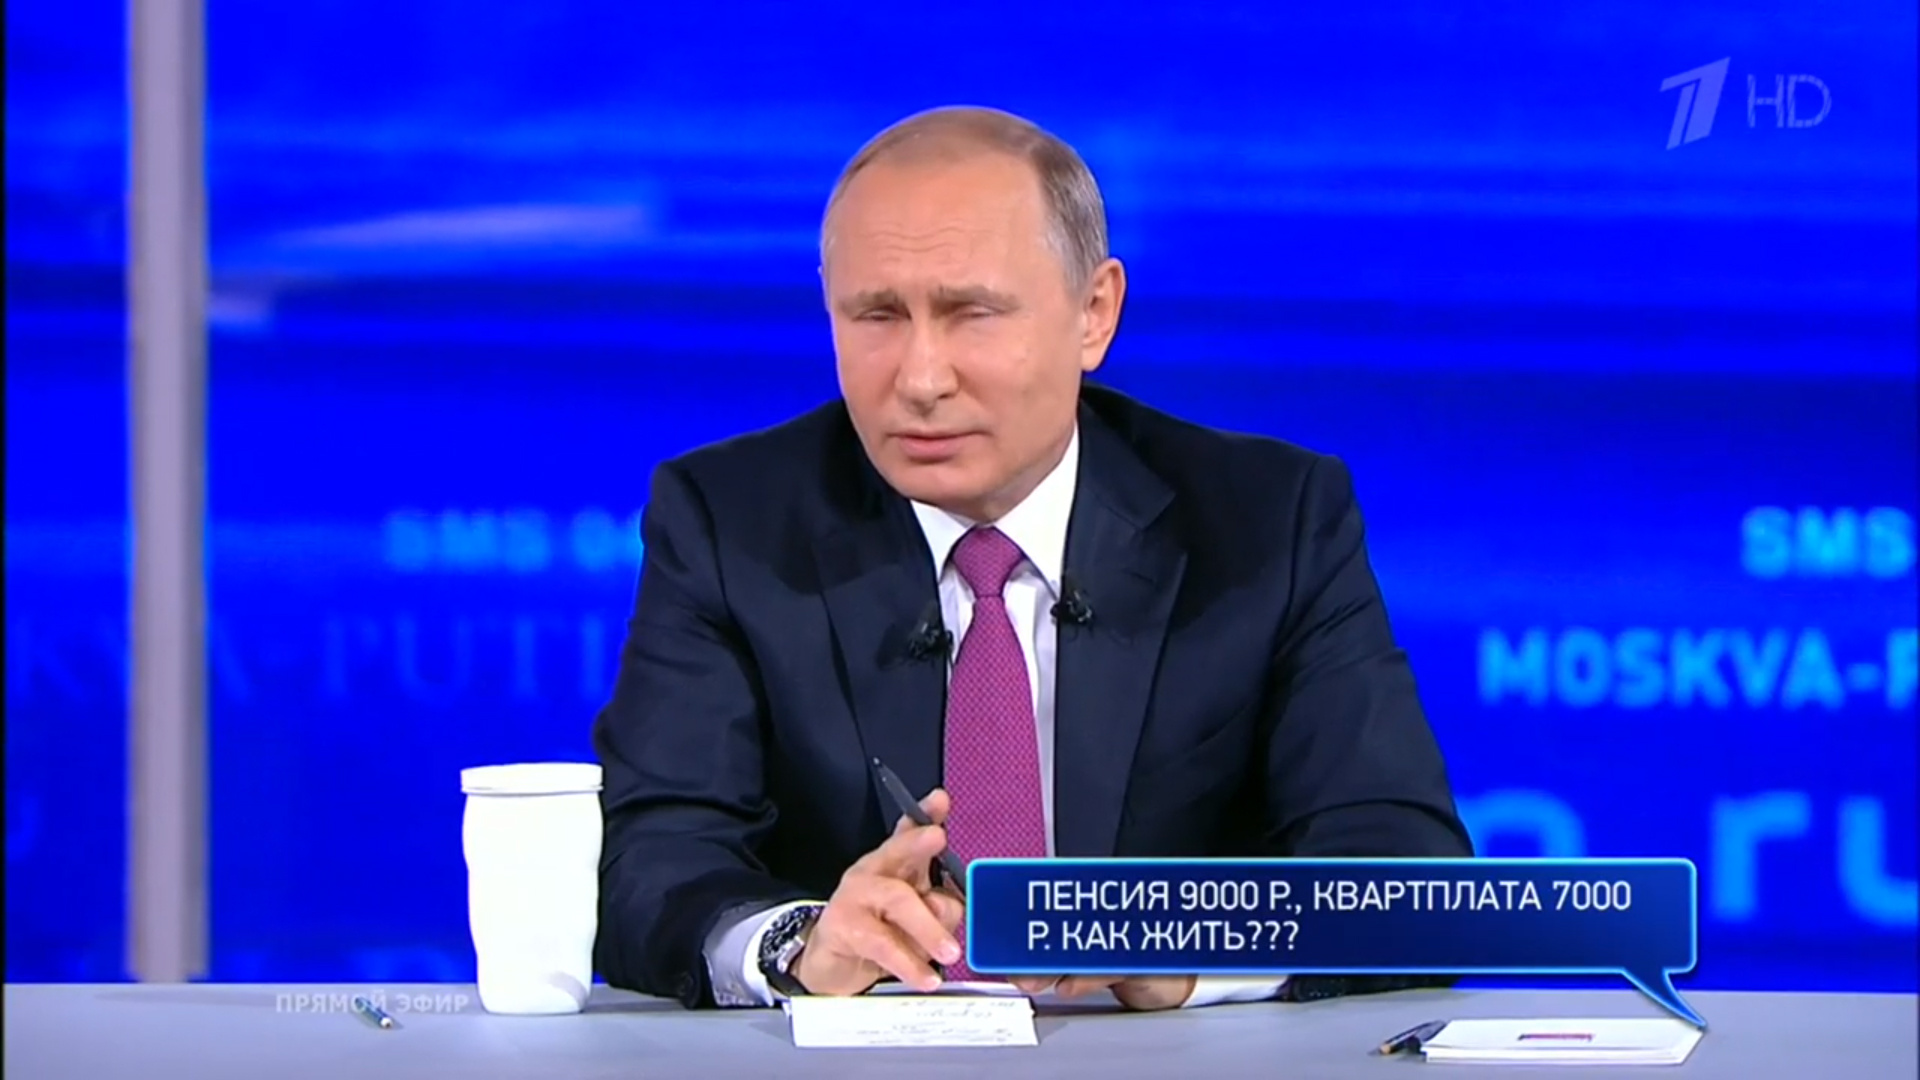 Люди спрашивают президента, как прожить на пенсию 9 000 рублей